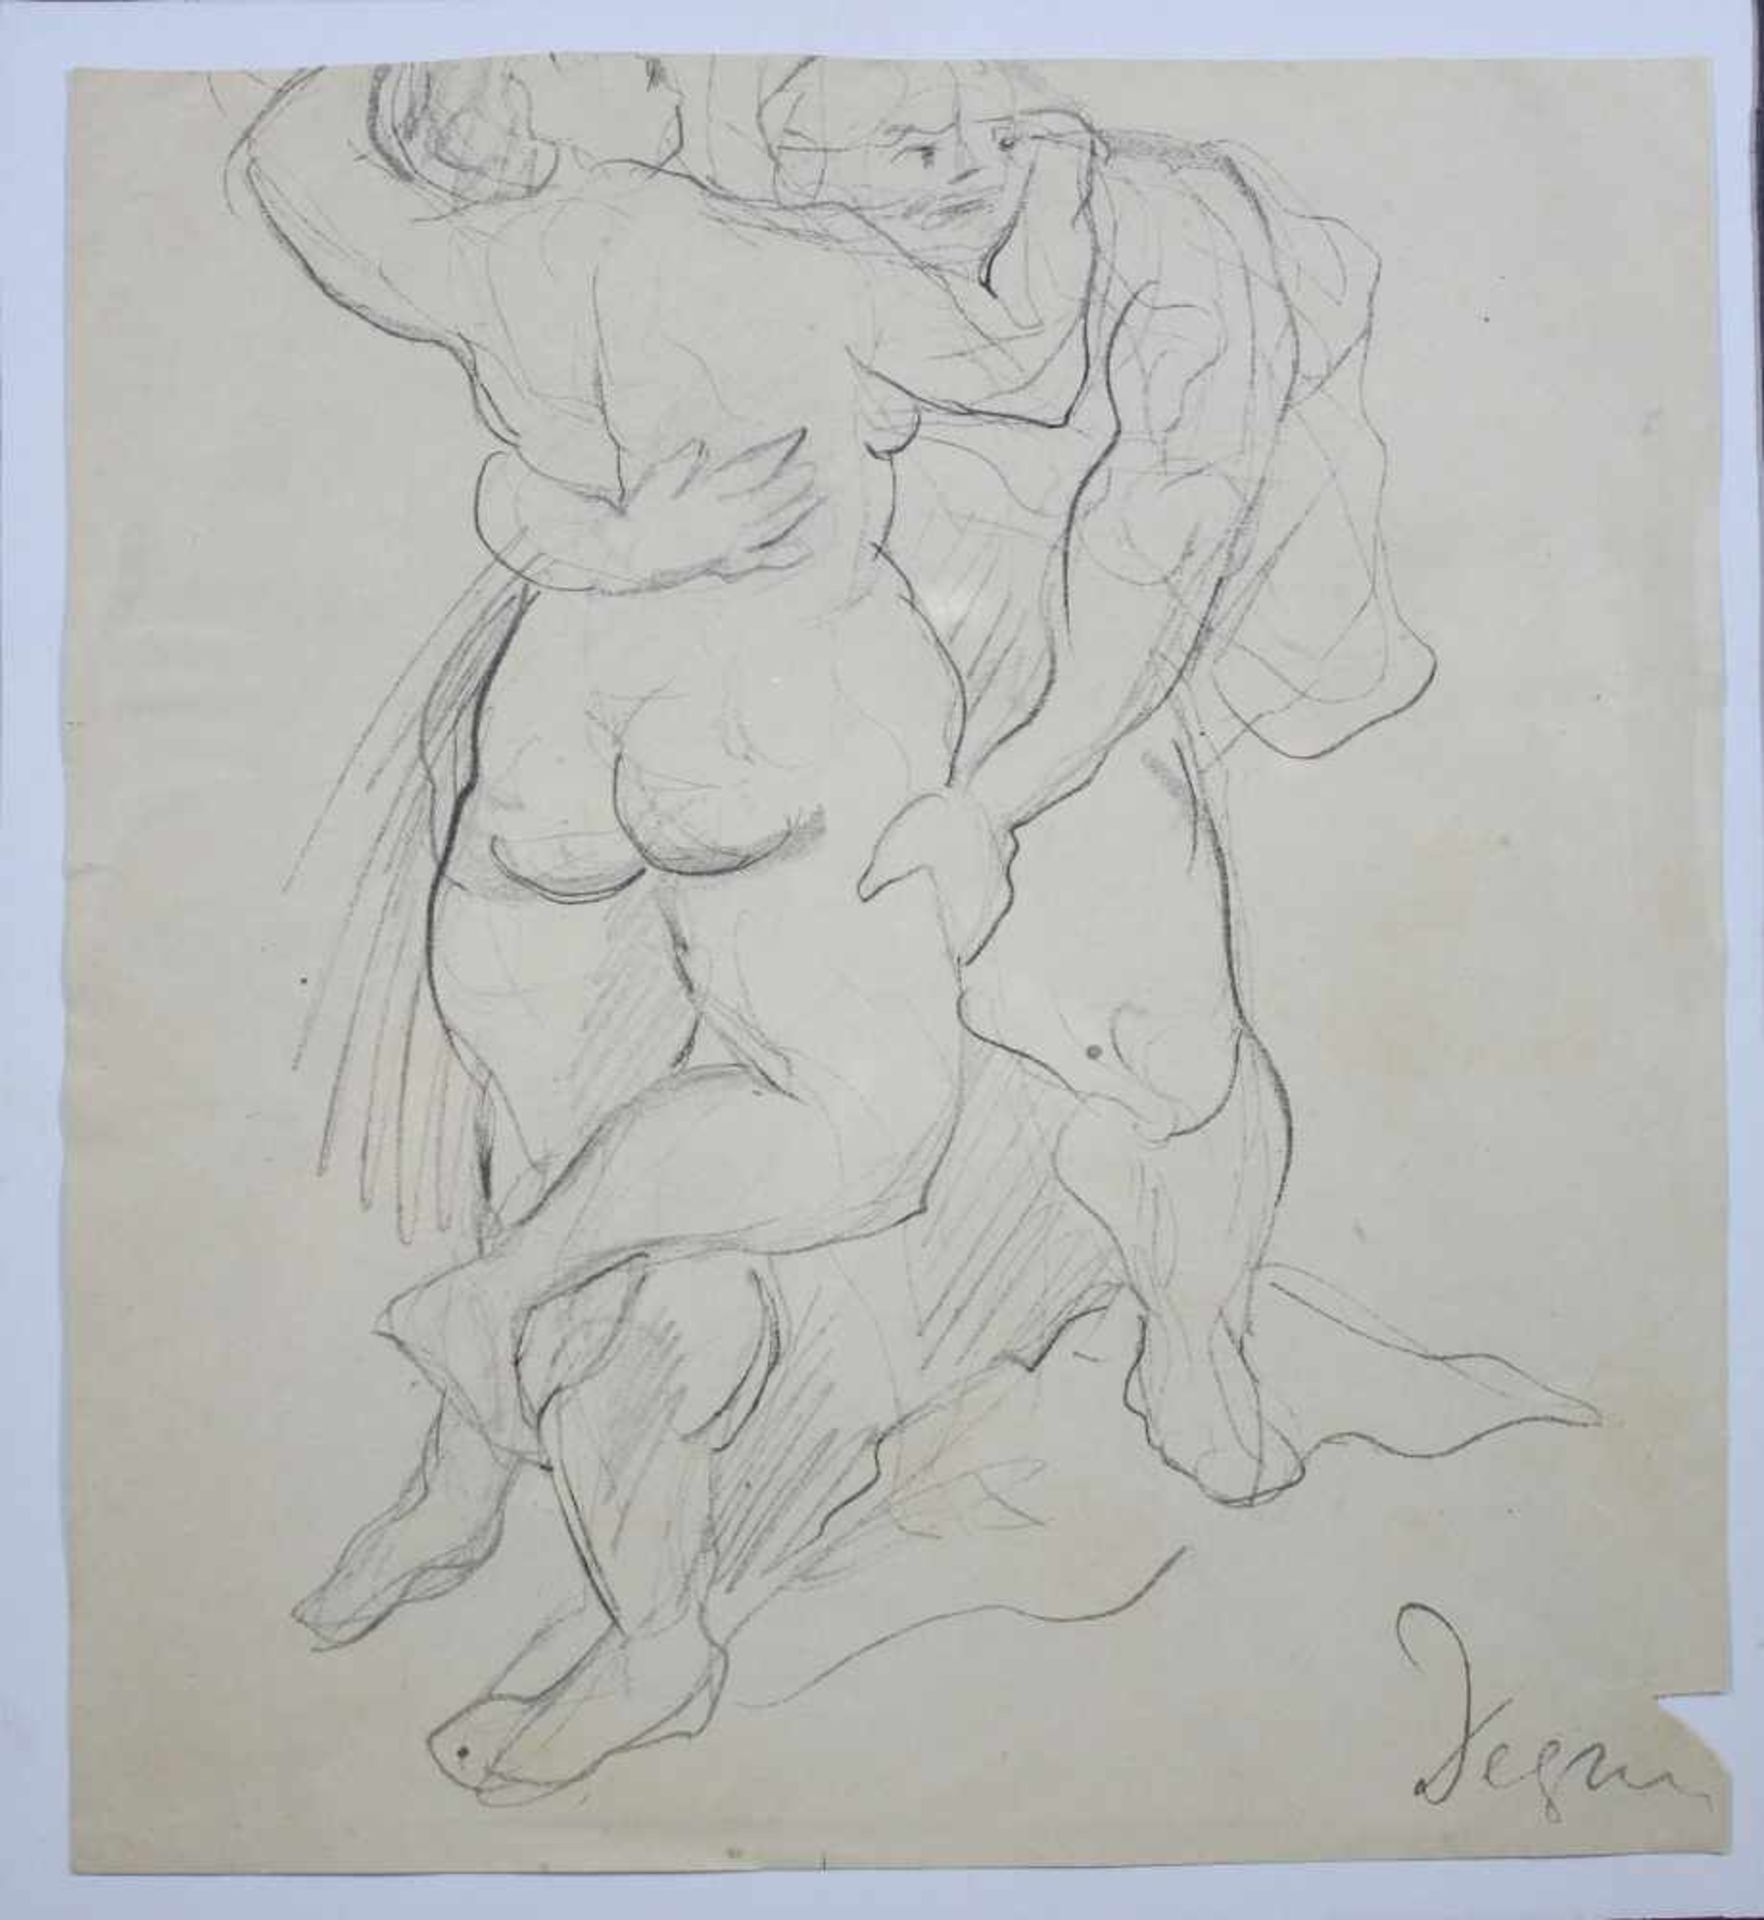 Arthur Degner, 1888 Gumbinnen - 1972 Berlin, Bleistiftzeichnung, Akt eines Tänzerpaares, u. r. sign.